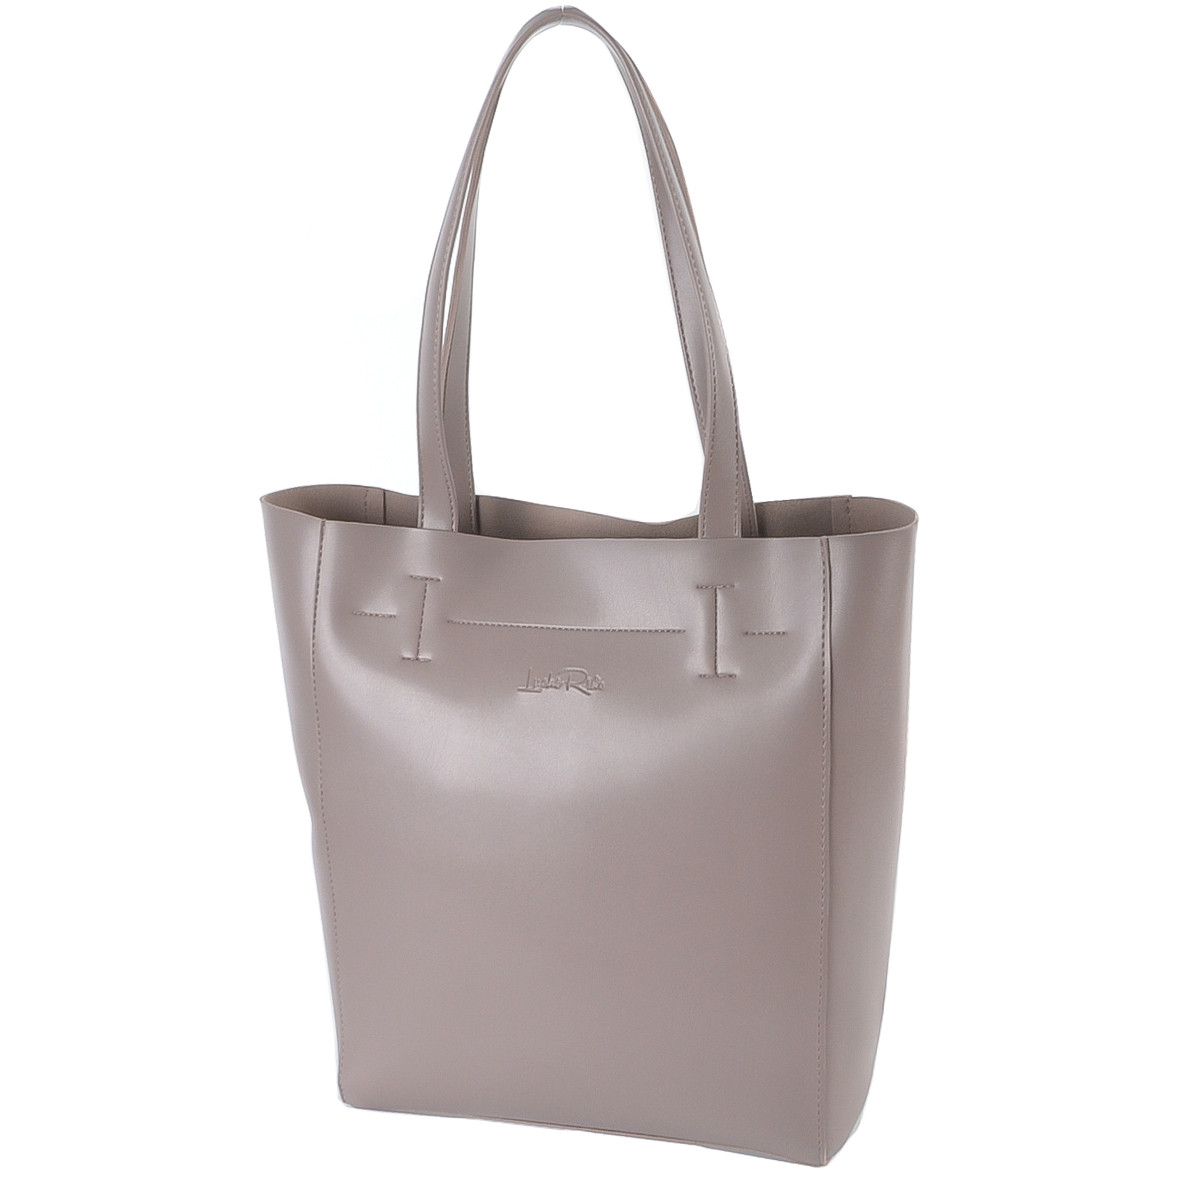 ДИМЧАТИЙ (темний беж) — фабрична сумка-шопер із простим кроєм і мінімальним оздобленням (Луцьк, 518)